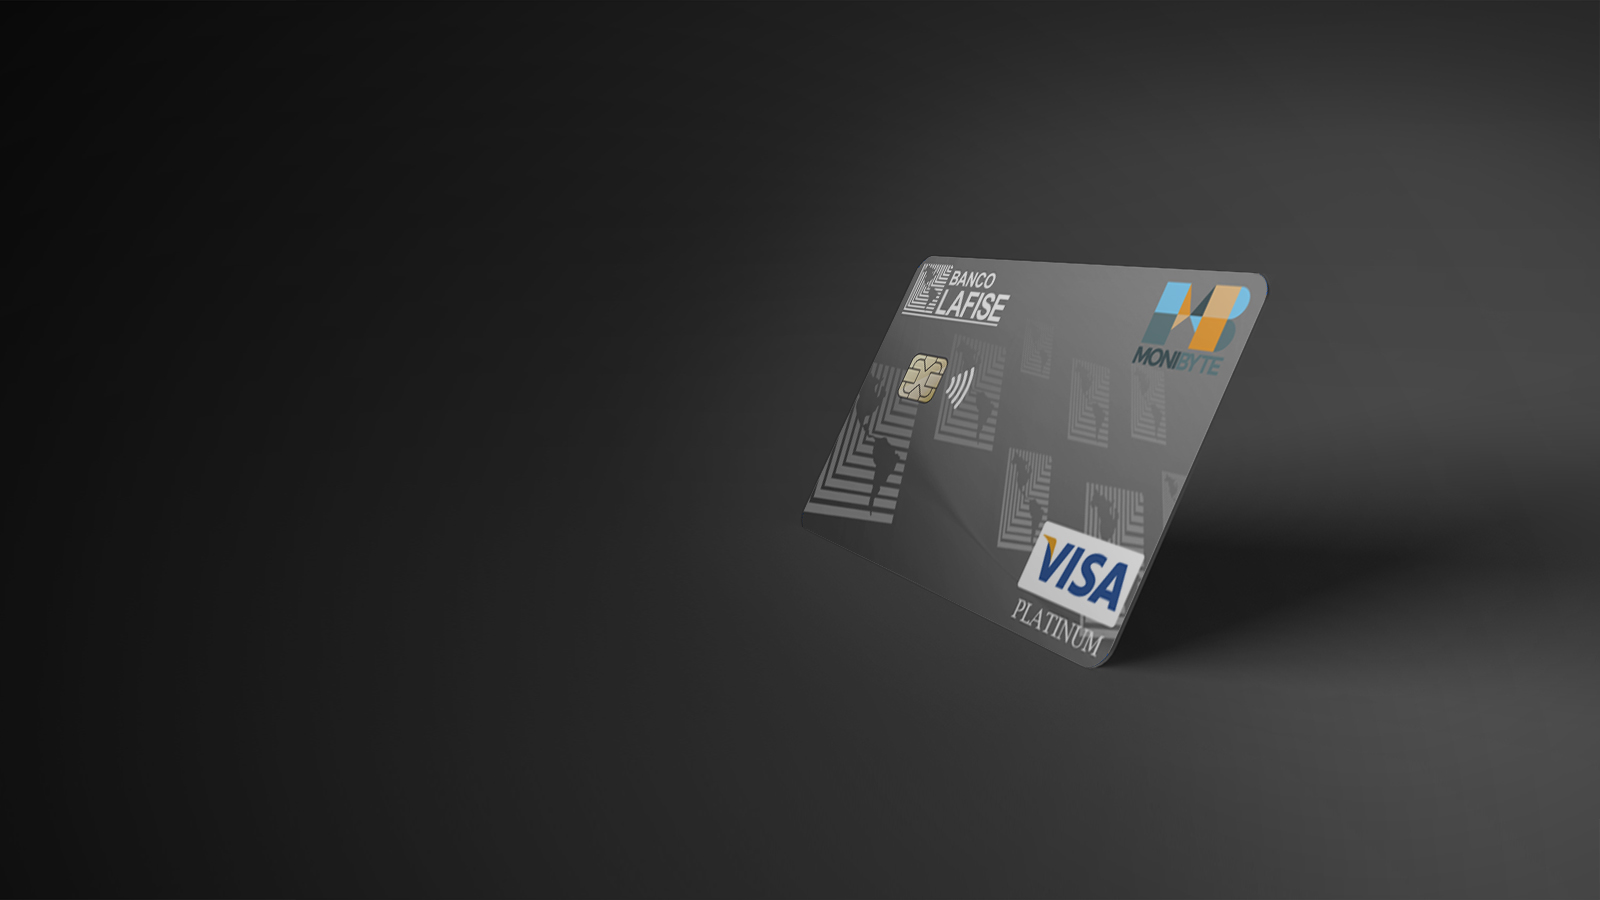 Tarjeta Visa Platinum de Banco Lafise República Dominicana